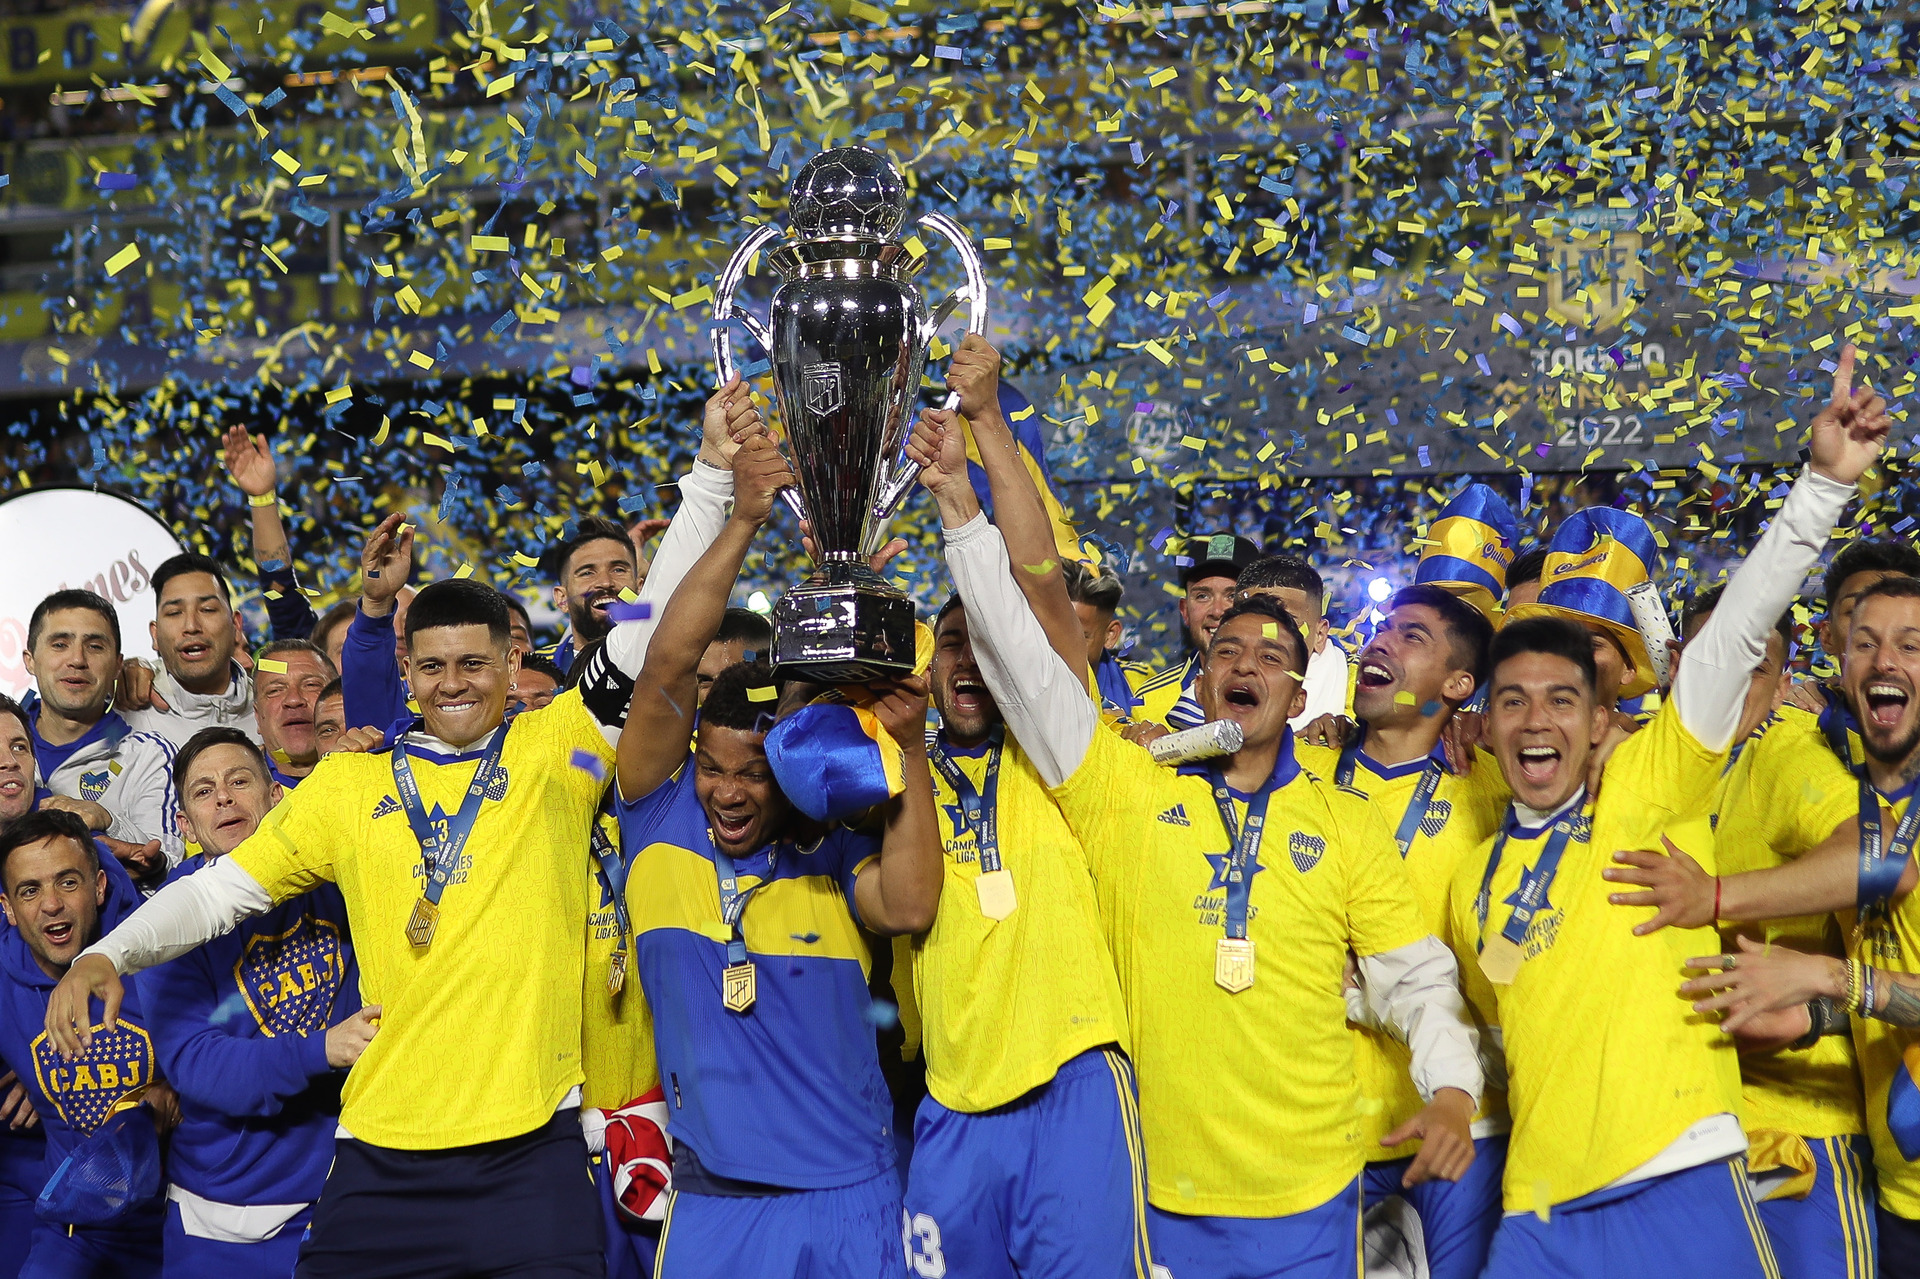 Con Boca campeón, Argentina define cupos a copas Libertadores y Sudamericana. Noticias en tiempo real